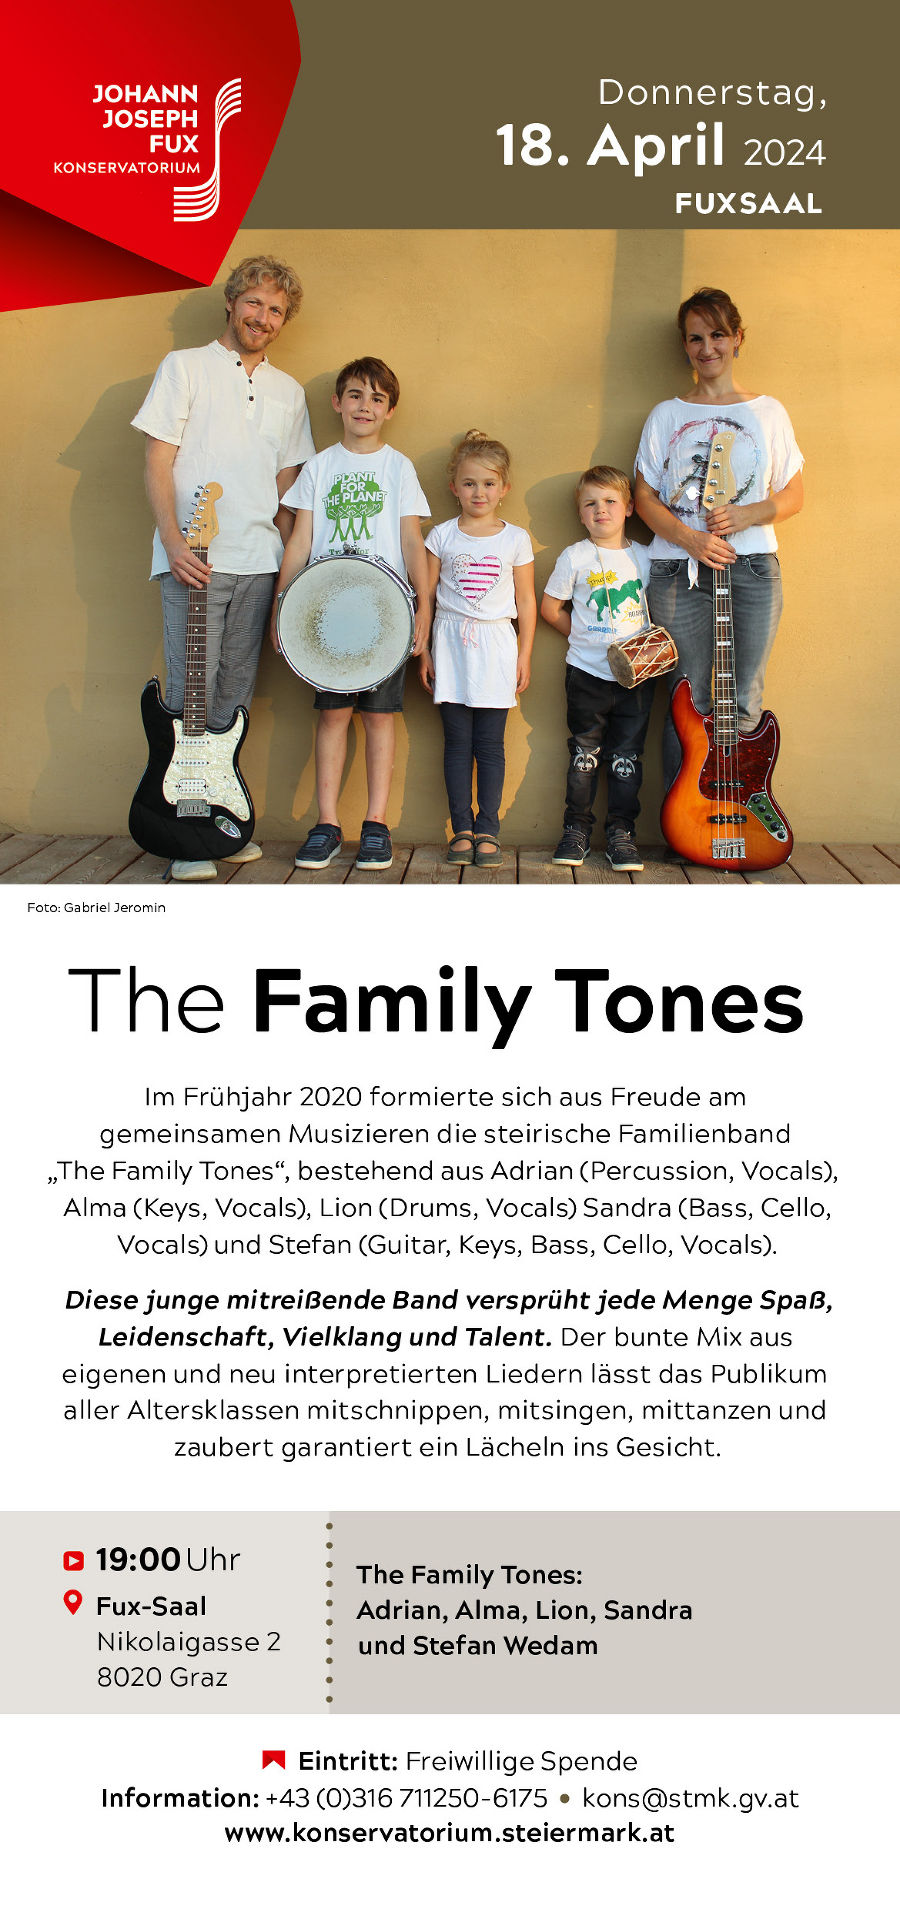 The Family Tones